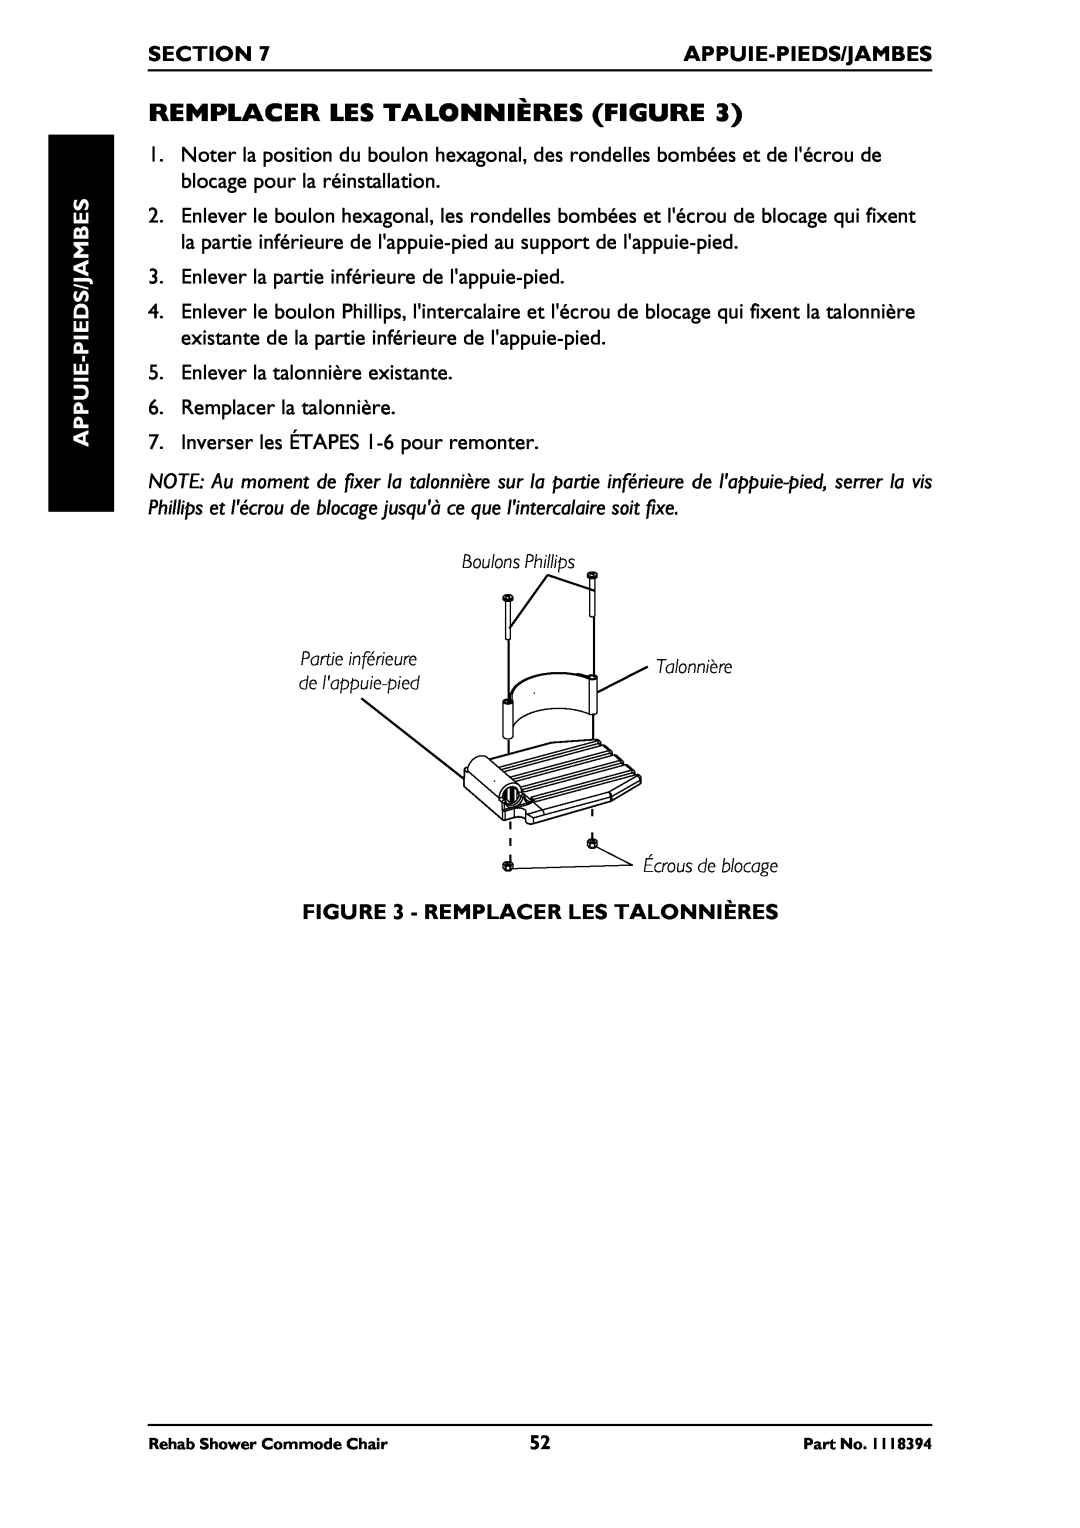 Invacare 6895, 6795, 6891 manual Remplacer Les Talonnières Figure, Pieds/Jambes-Appuie, Section 